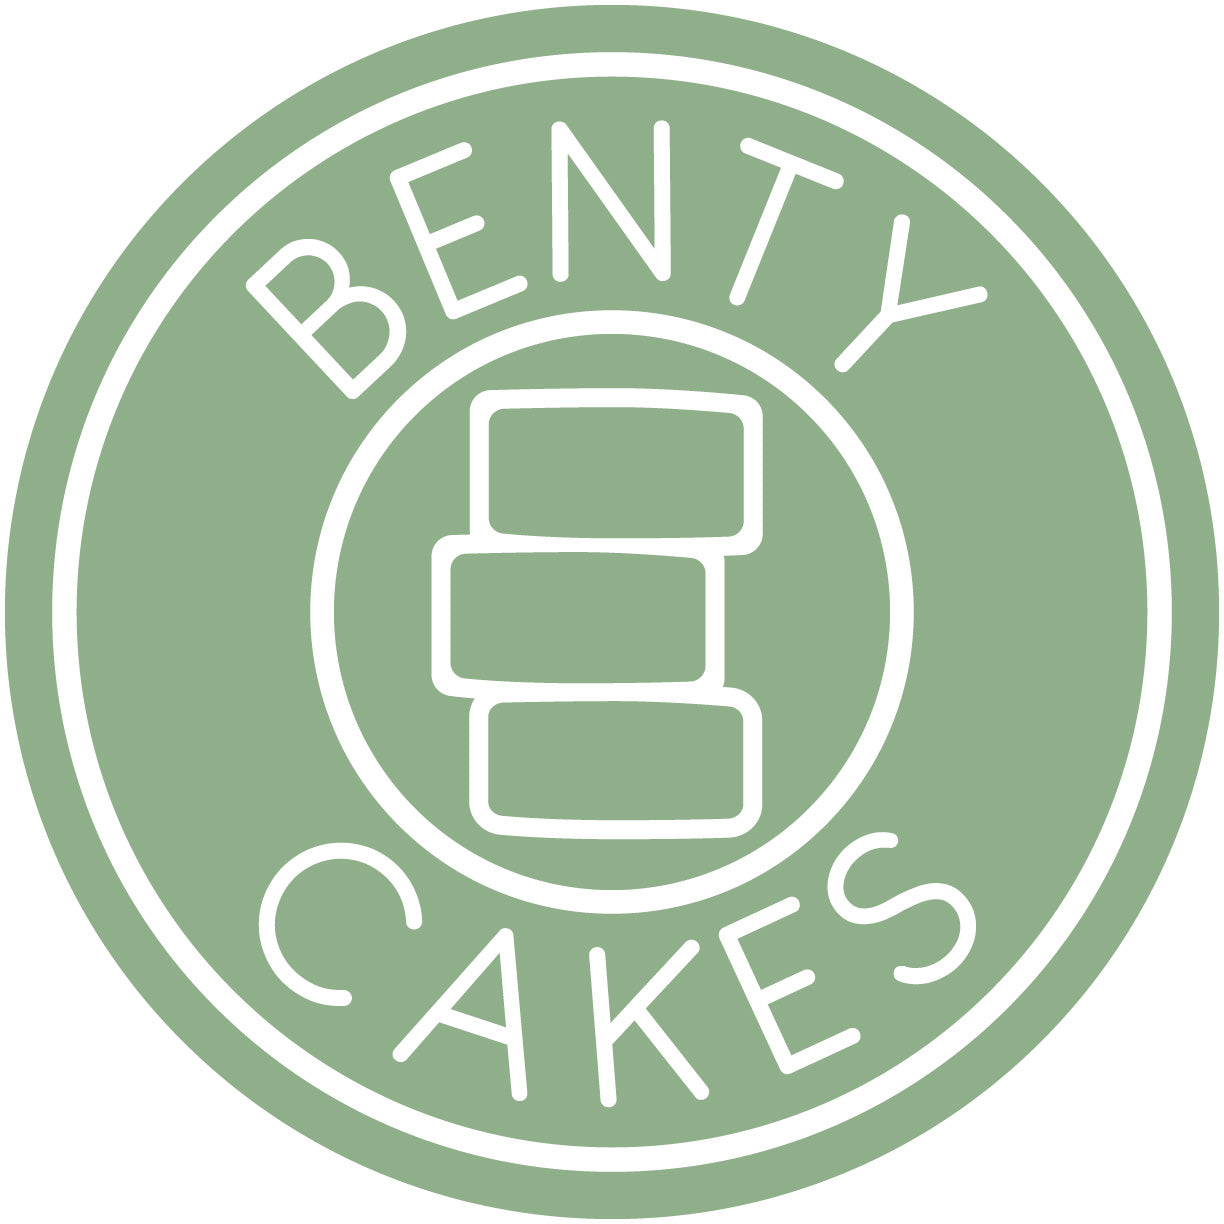 benty cakes